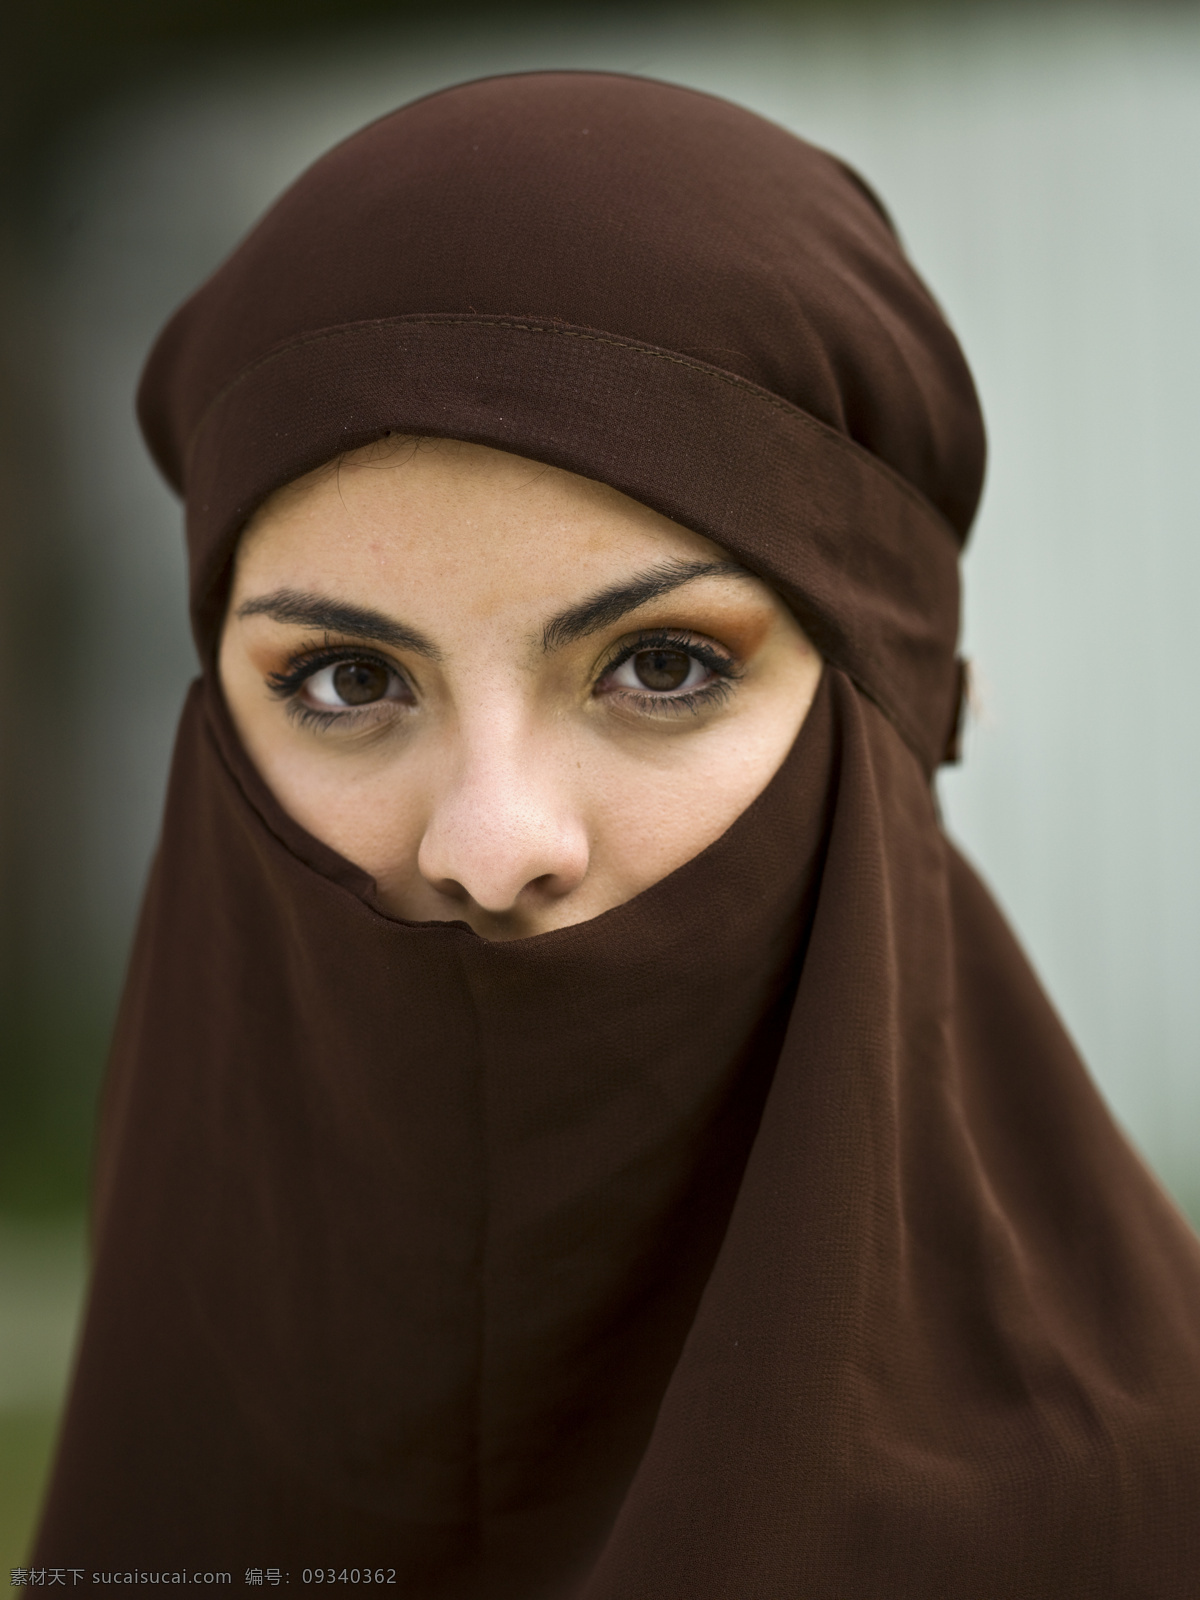 蒙面 纱 阿拉伯 美女图片 女性 阿拉伯妇女 阿拉伯美女 外国女性 外国女人 生活人物 人物图片